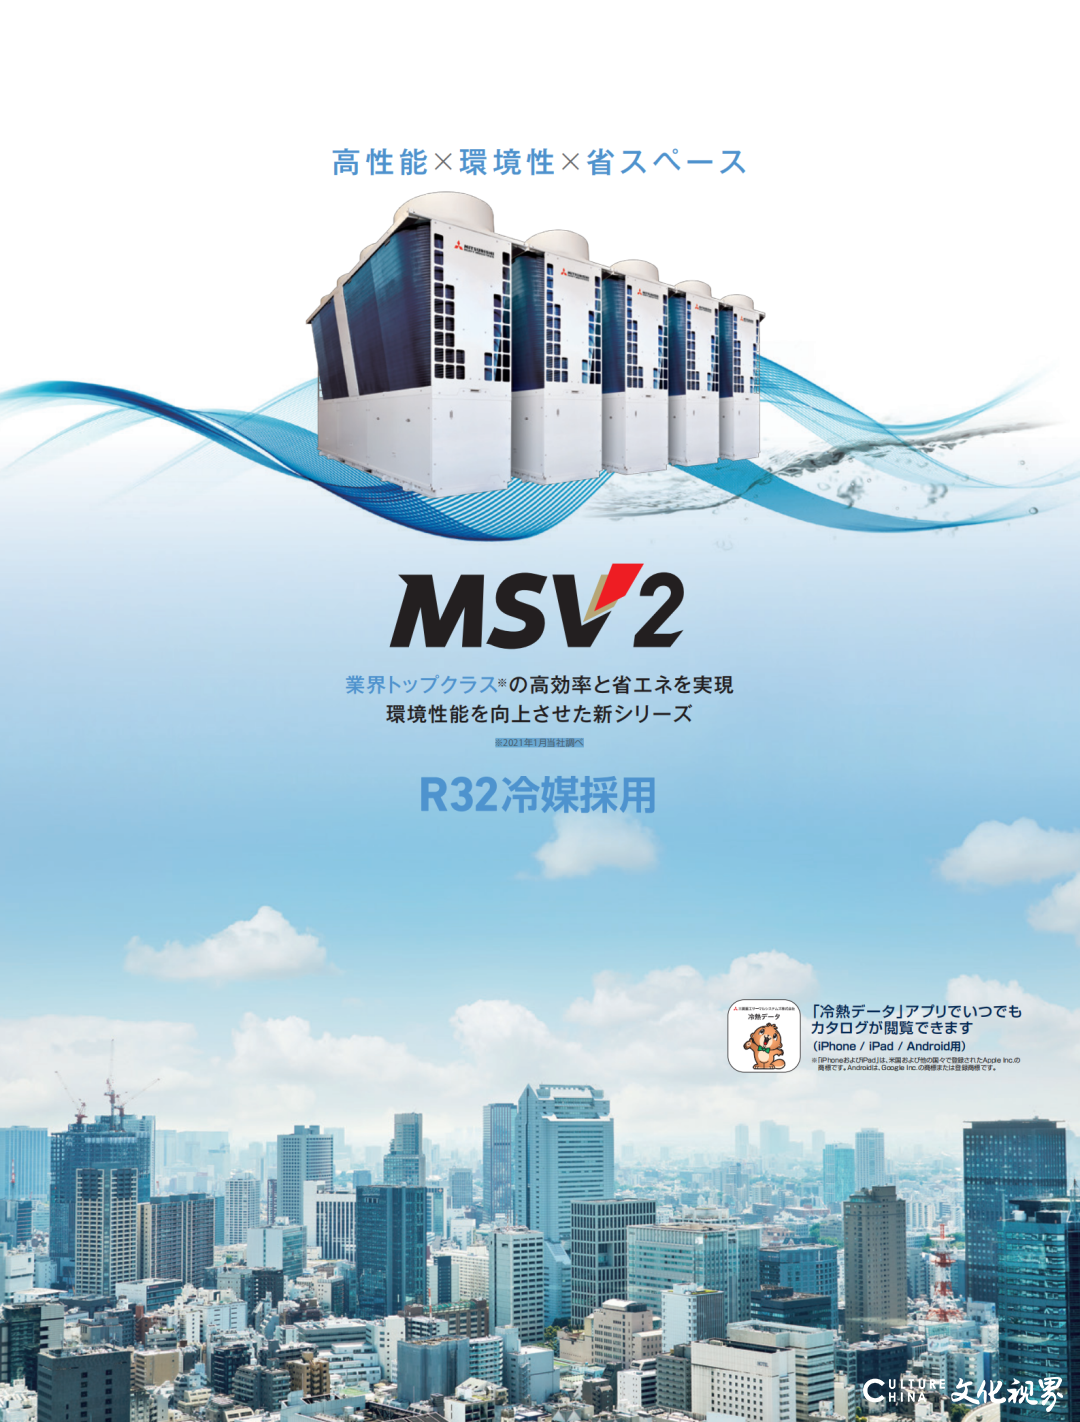 三菱重工空冷热泵水机MSV2系列斩获日本节能大奖，并正式量产落地